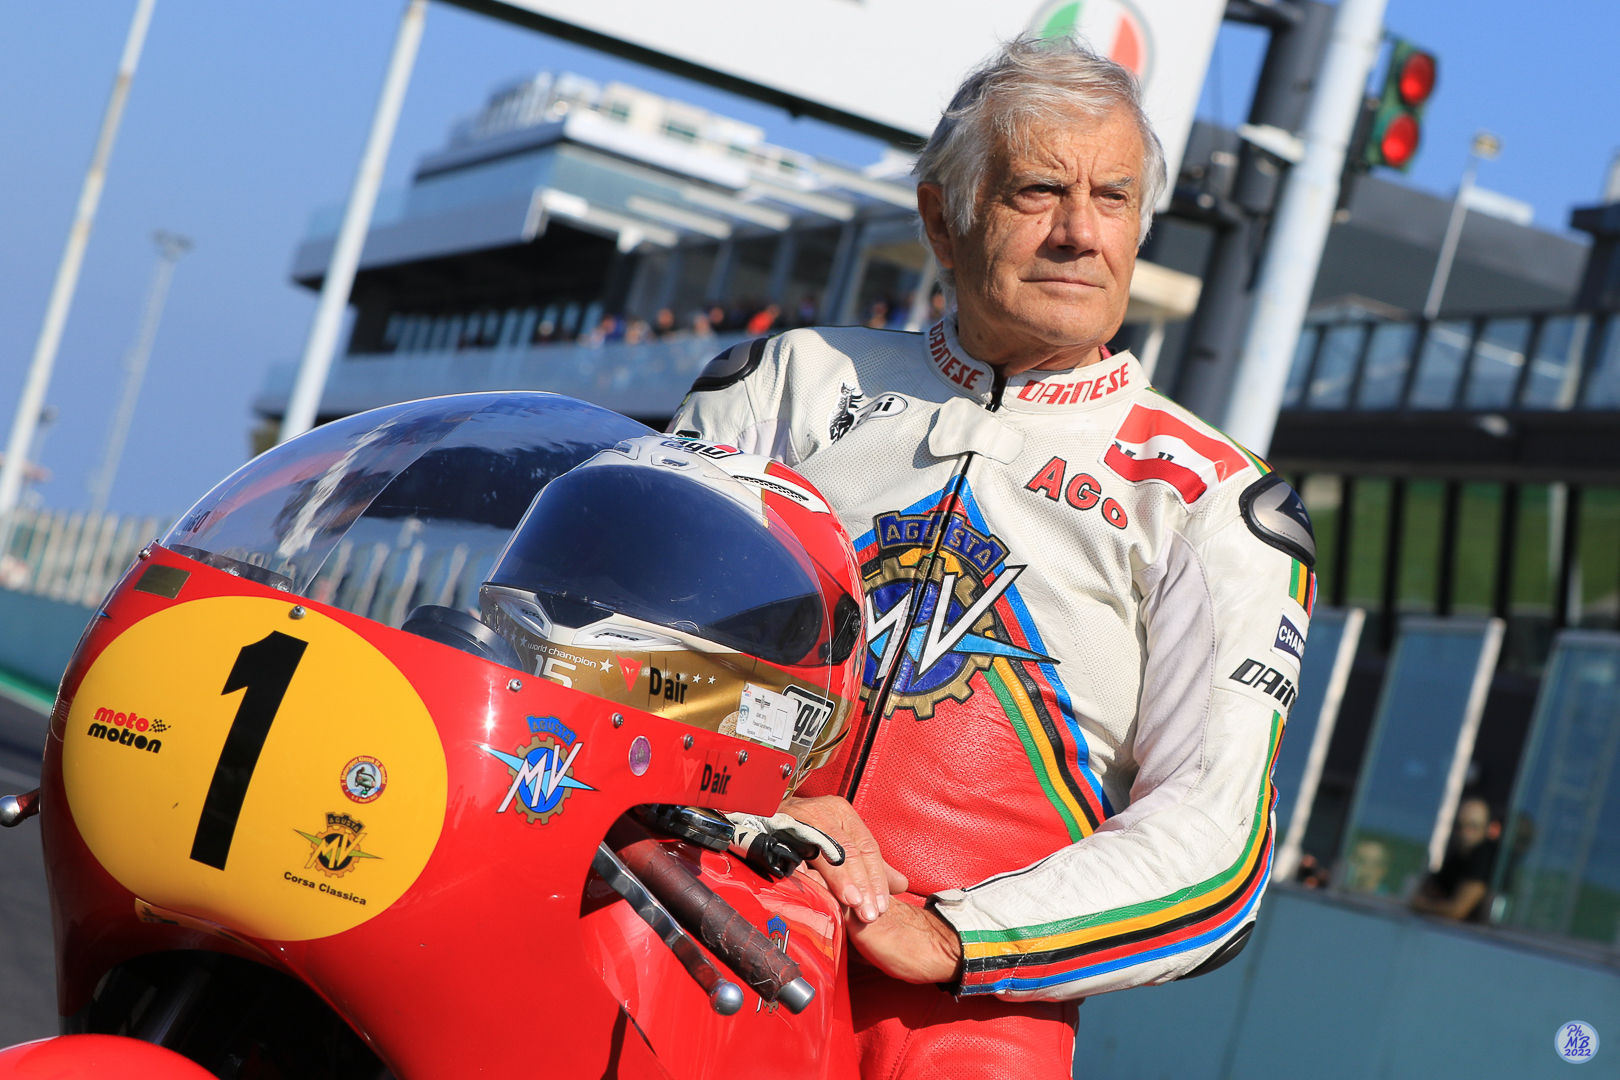 Misano Adriatico. Giacomo Agostini festeggia 80 anni nella Riders’ Land